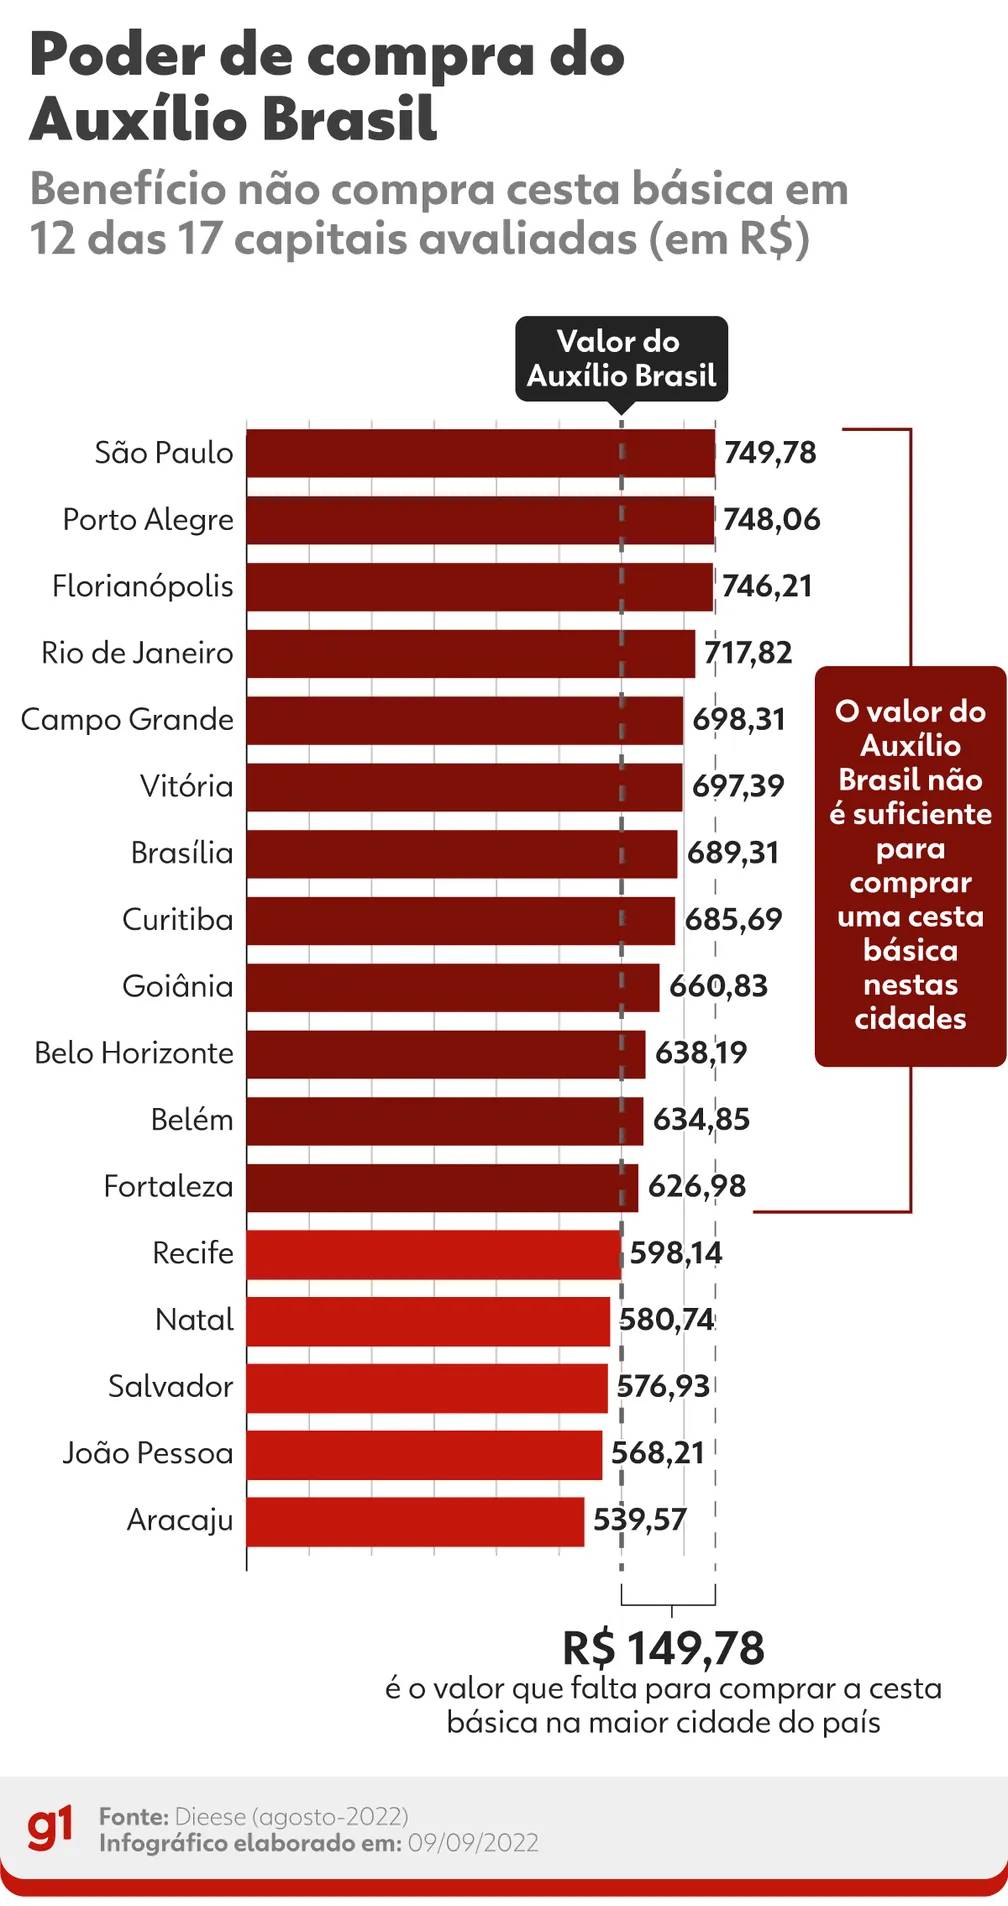 Auxílio Brasil só compra cesta básica em 5 de 17 capitais brasileiras